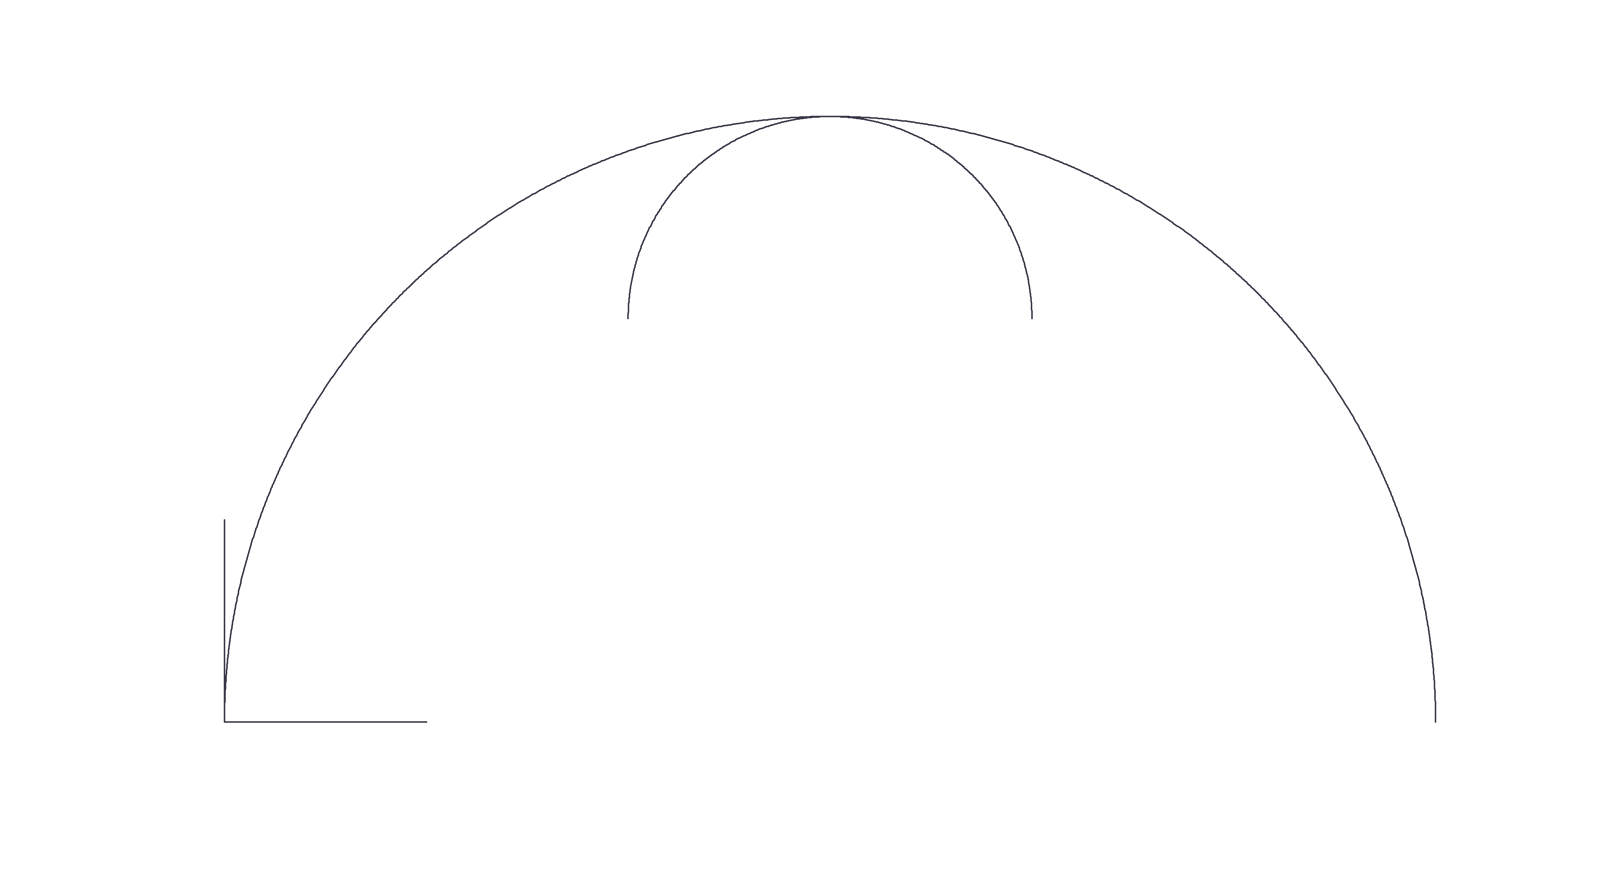 .NET での曲線の描画